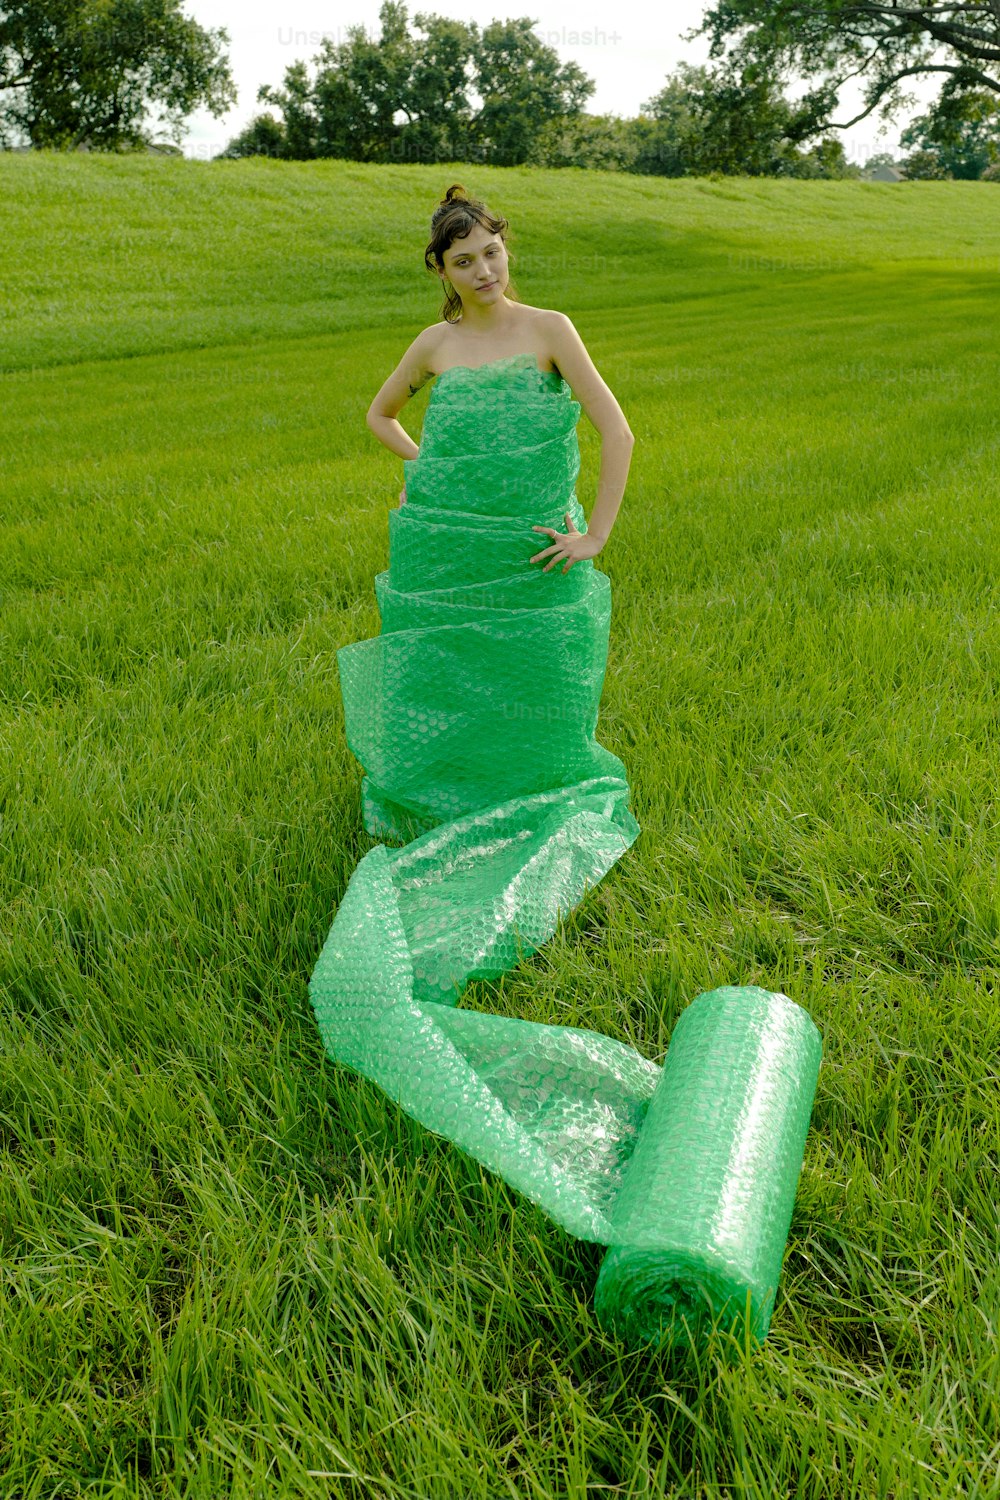 野原に立つ緑のドレスを着た女性